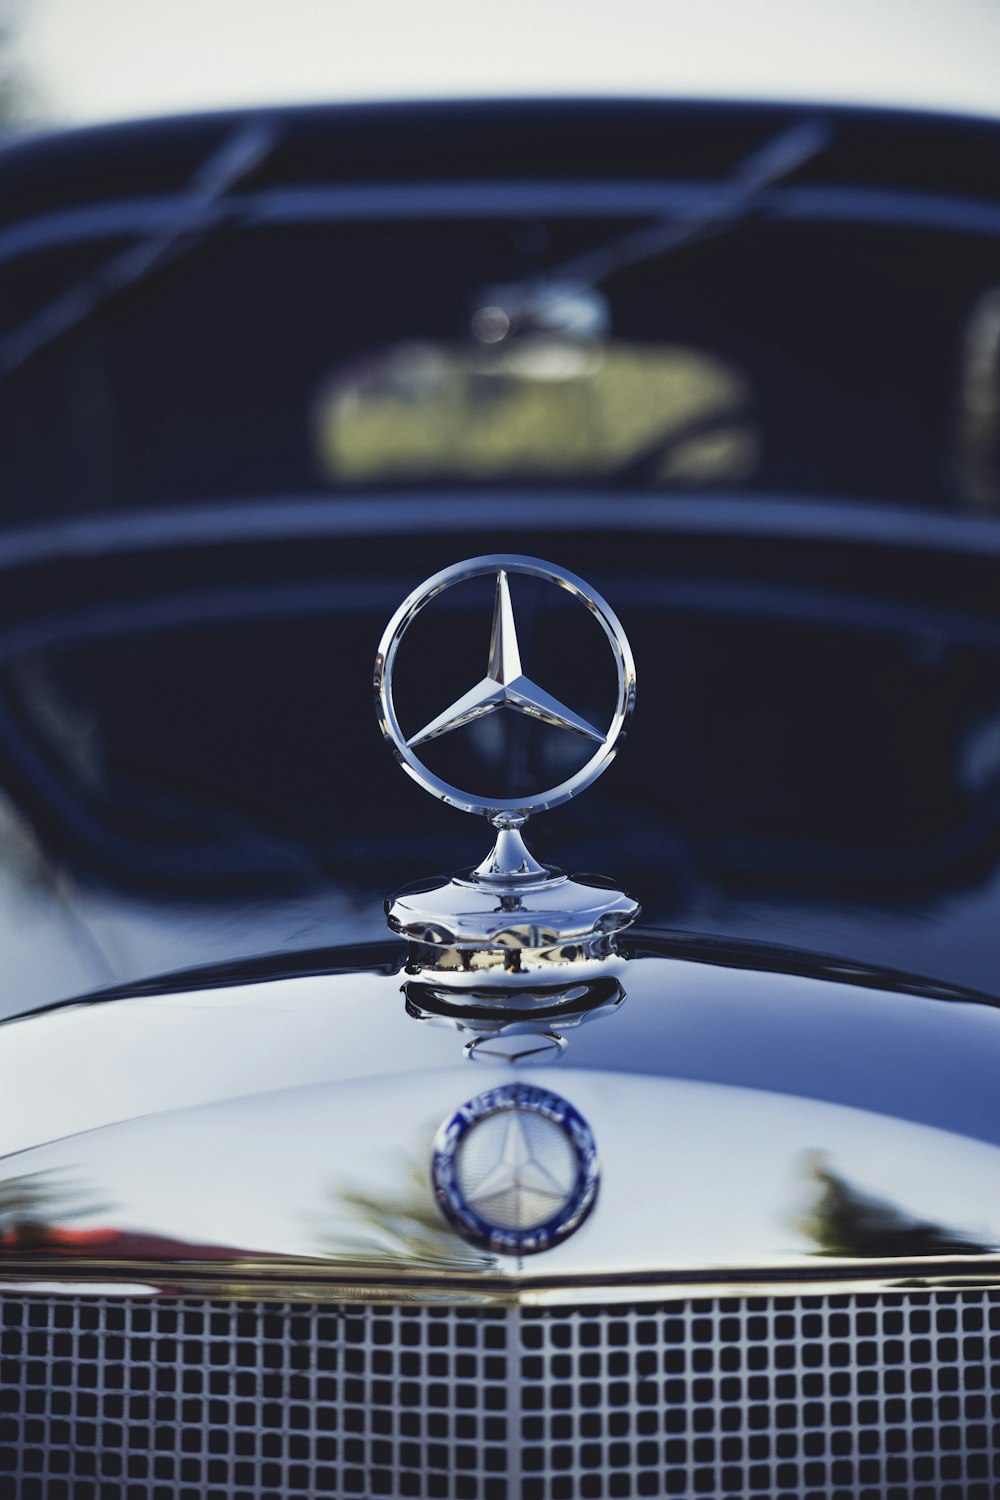 a close up of a mercedes emblem on a car